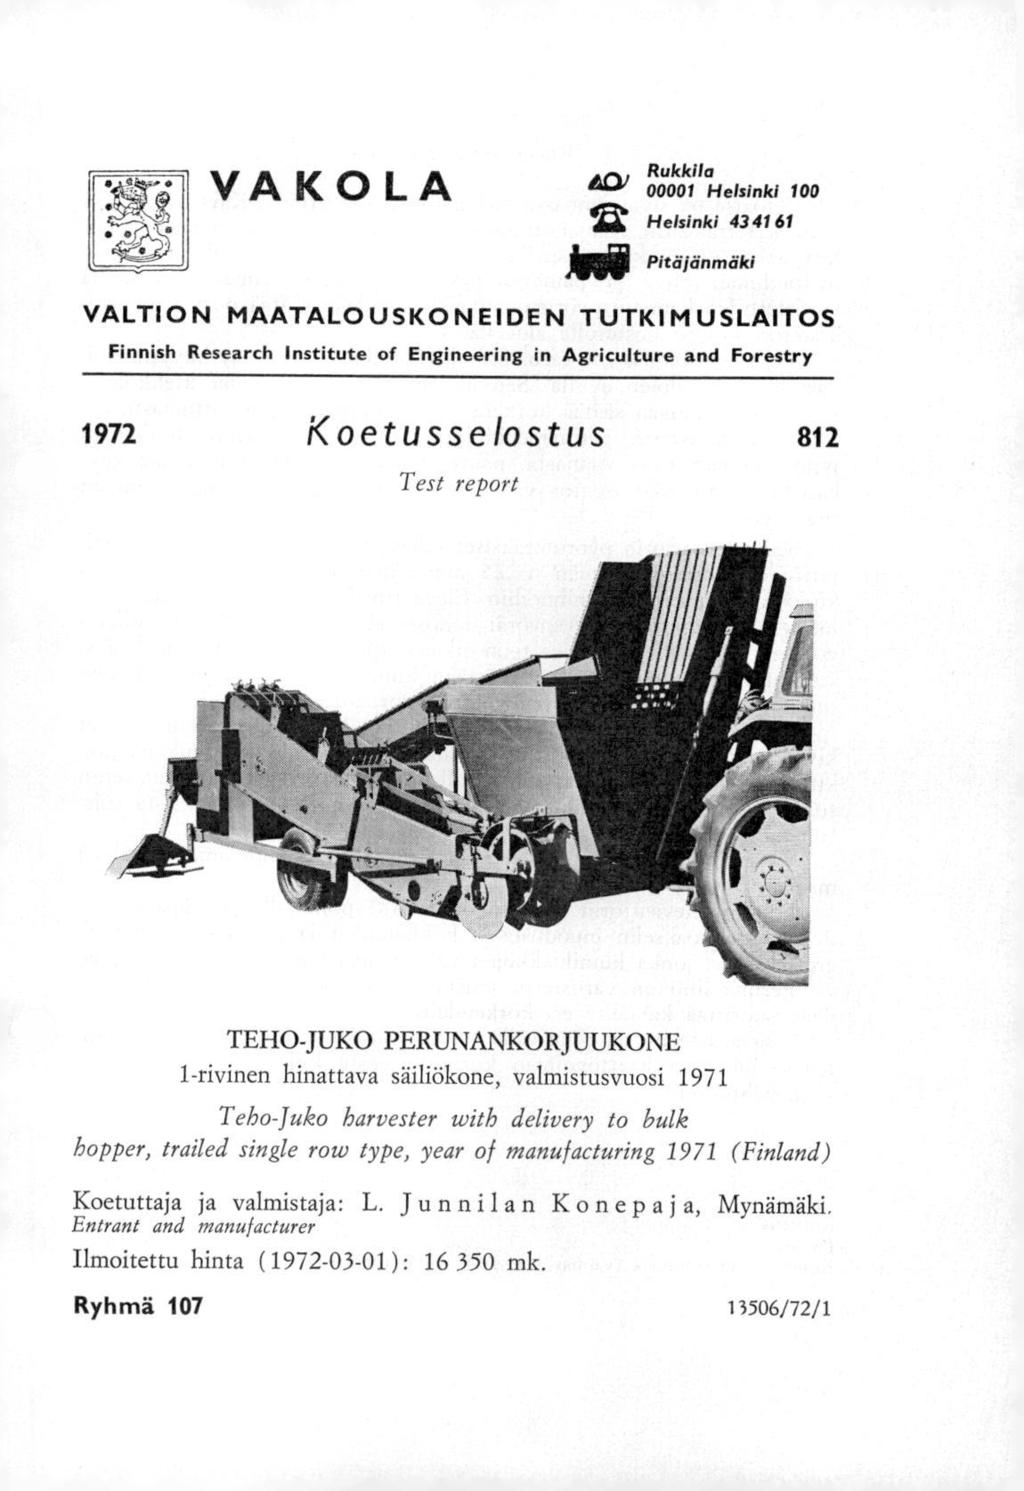 VAKOLA ACII R 00001 Helsinki 100 izt Helsinki 43 41 61 idi Pitäjänmäki m VALTION MAATALOUSKONEIDEN TUTKIMUSLAITOS Finnish Research Institute of Engineering in Agriculture and Forestry 1972